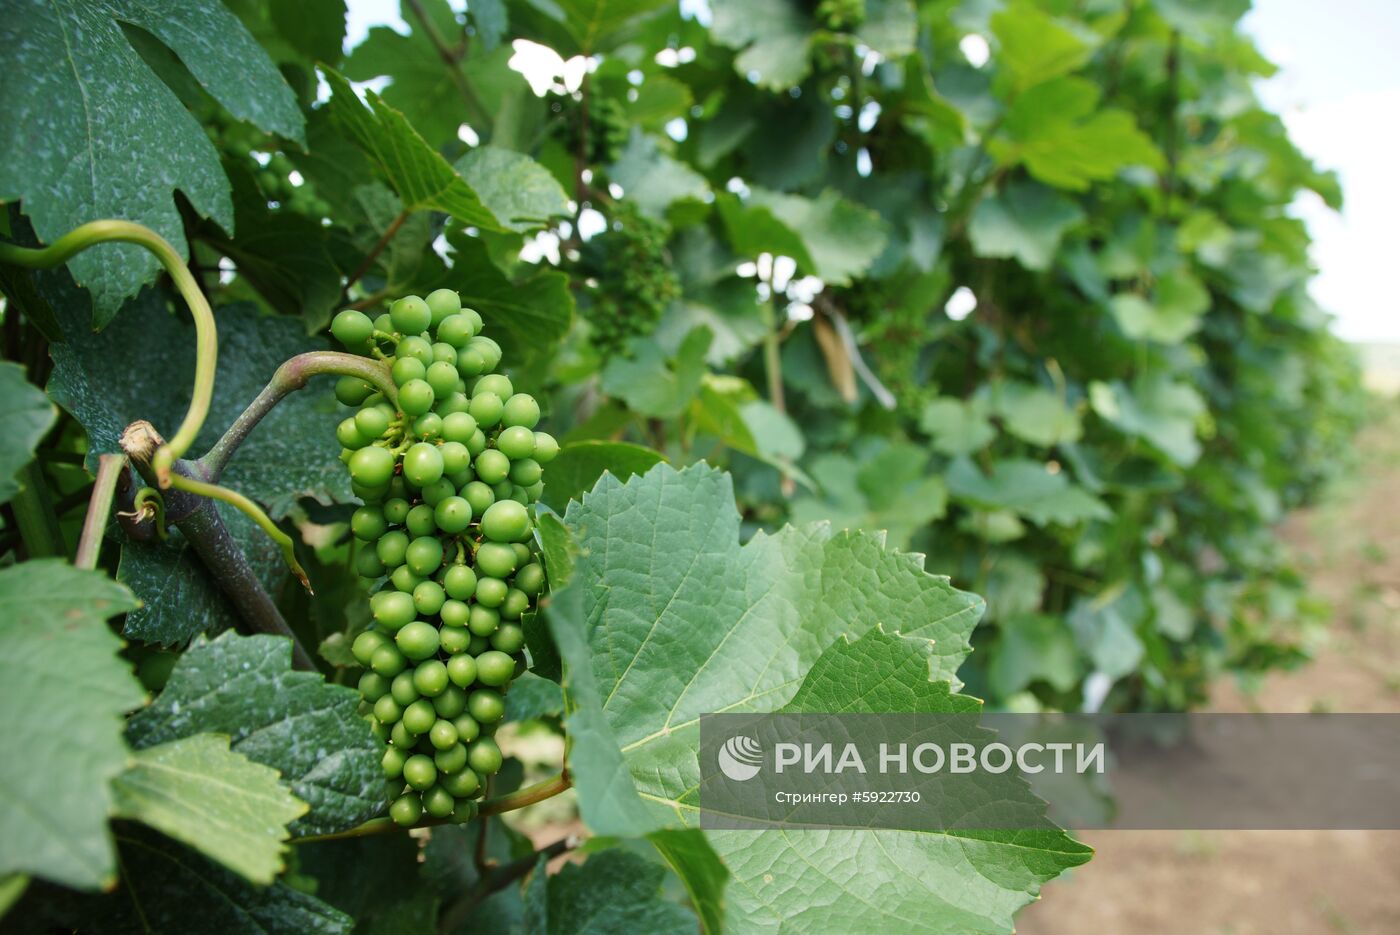 Винодельня "Фрага" в Луганске